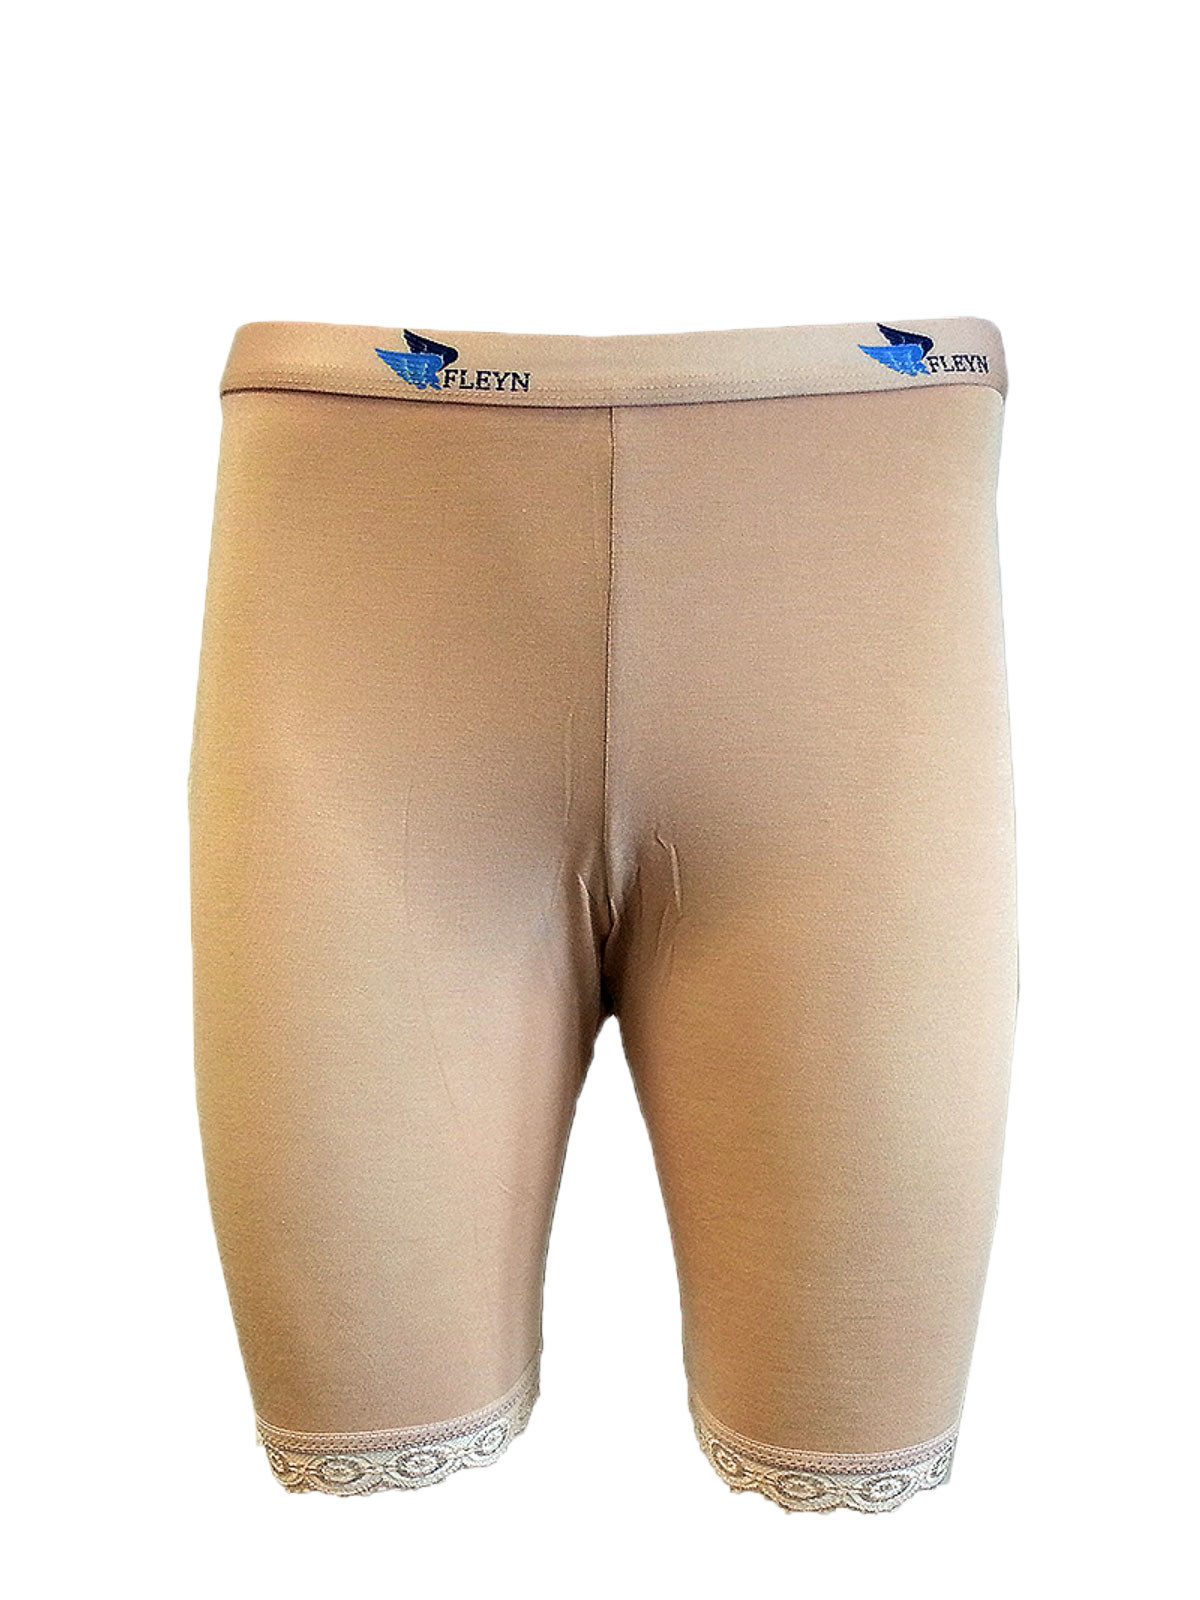 Fleyn Caprihose Boutique Qualität Bambus Boxershort lange Unterhose mit Spitze FLY3010